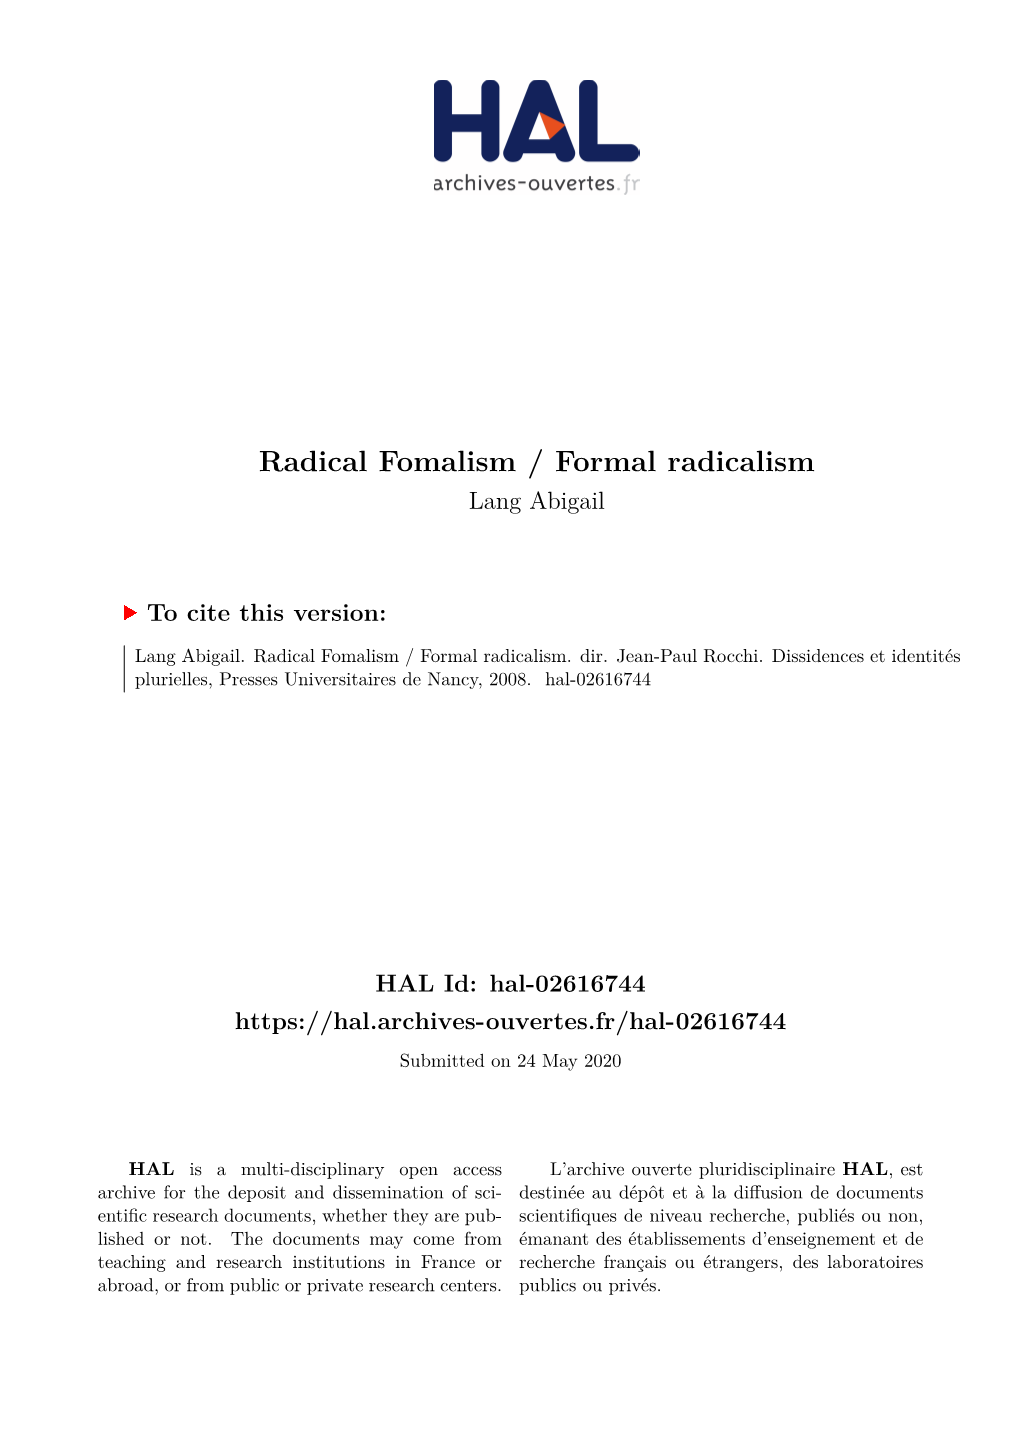 Radical Fomalism / Formal Radicalism Lang Abigail